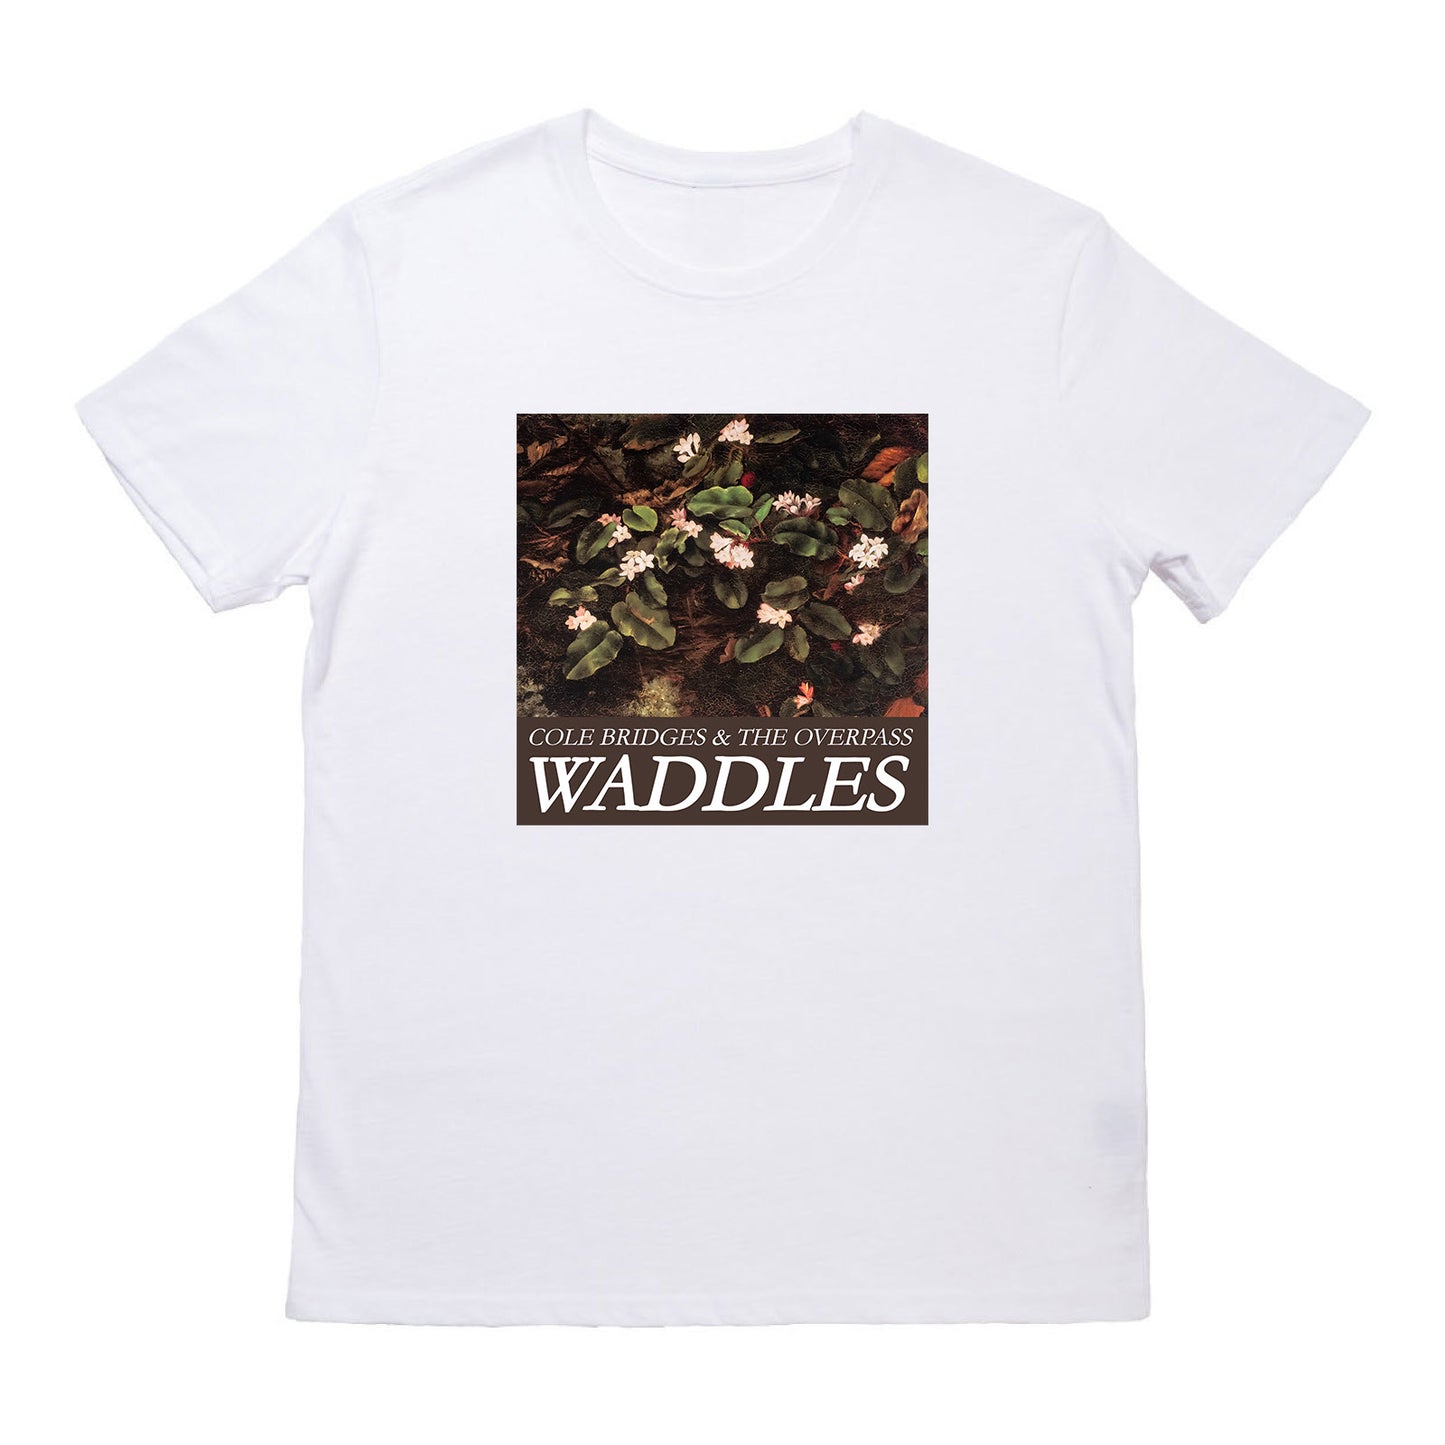 Cole Bridges "Waddles" T-Shirt